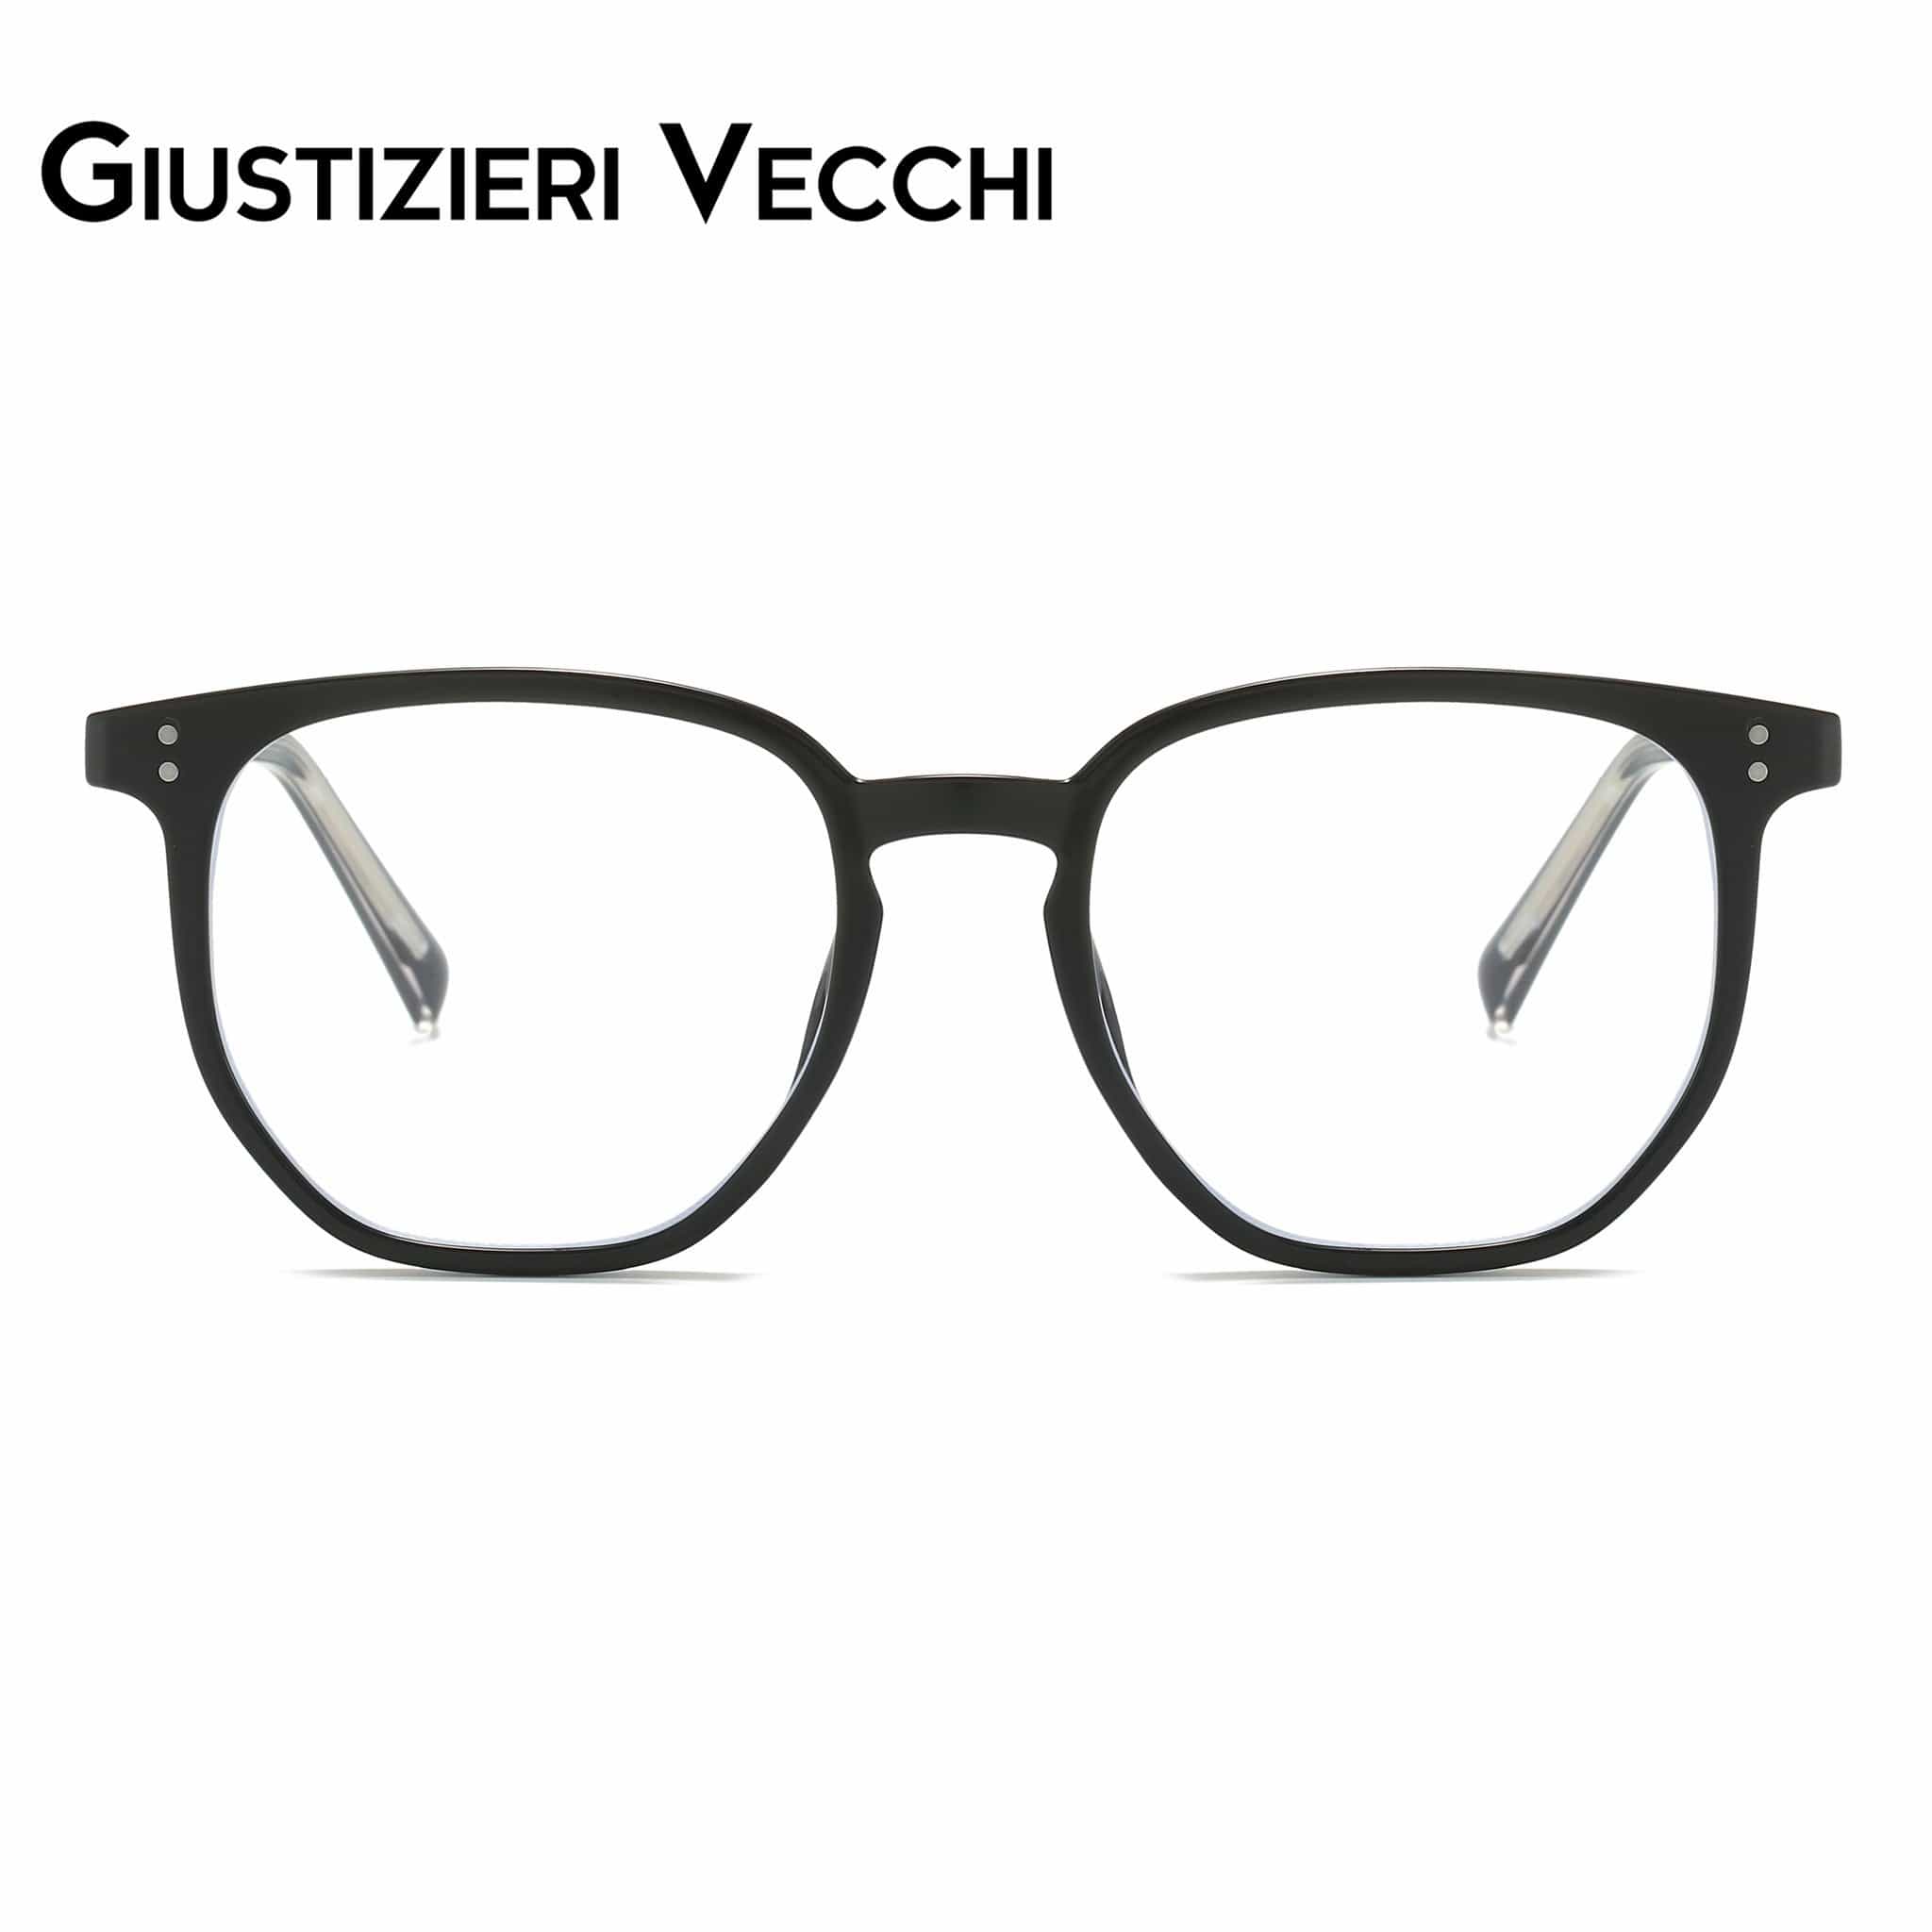 GIUSTIZIERI VECCHI Eyeglasses Small / Black Venezia Vista Uno